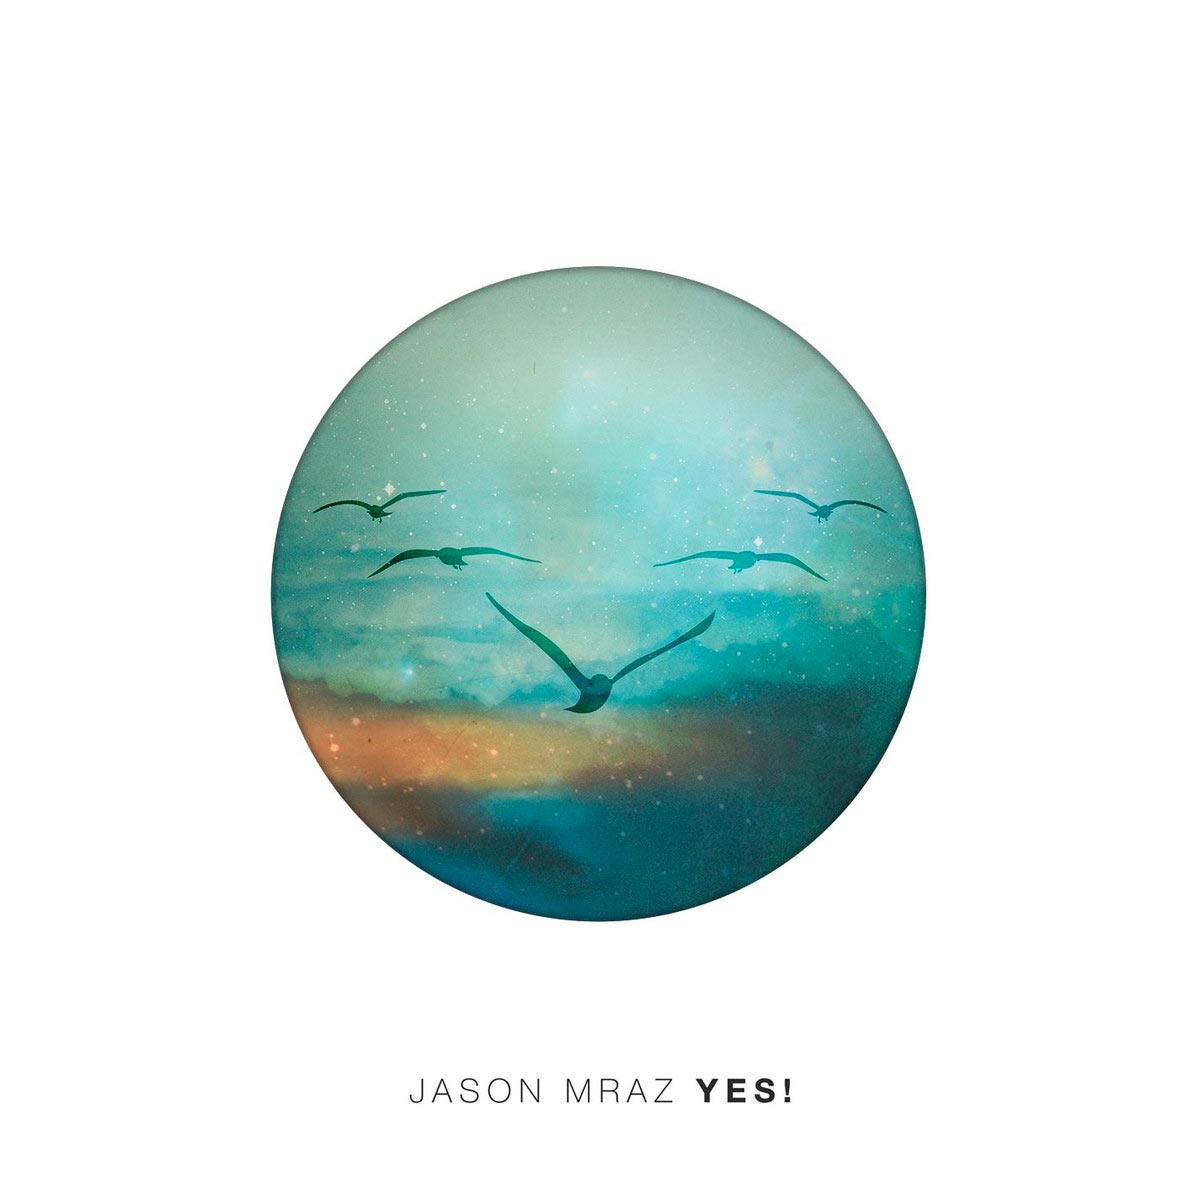 Jason Mraz: Yes!